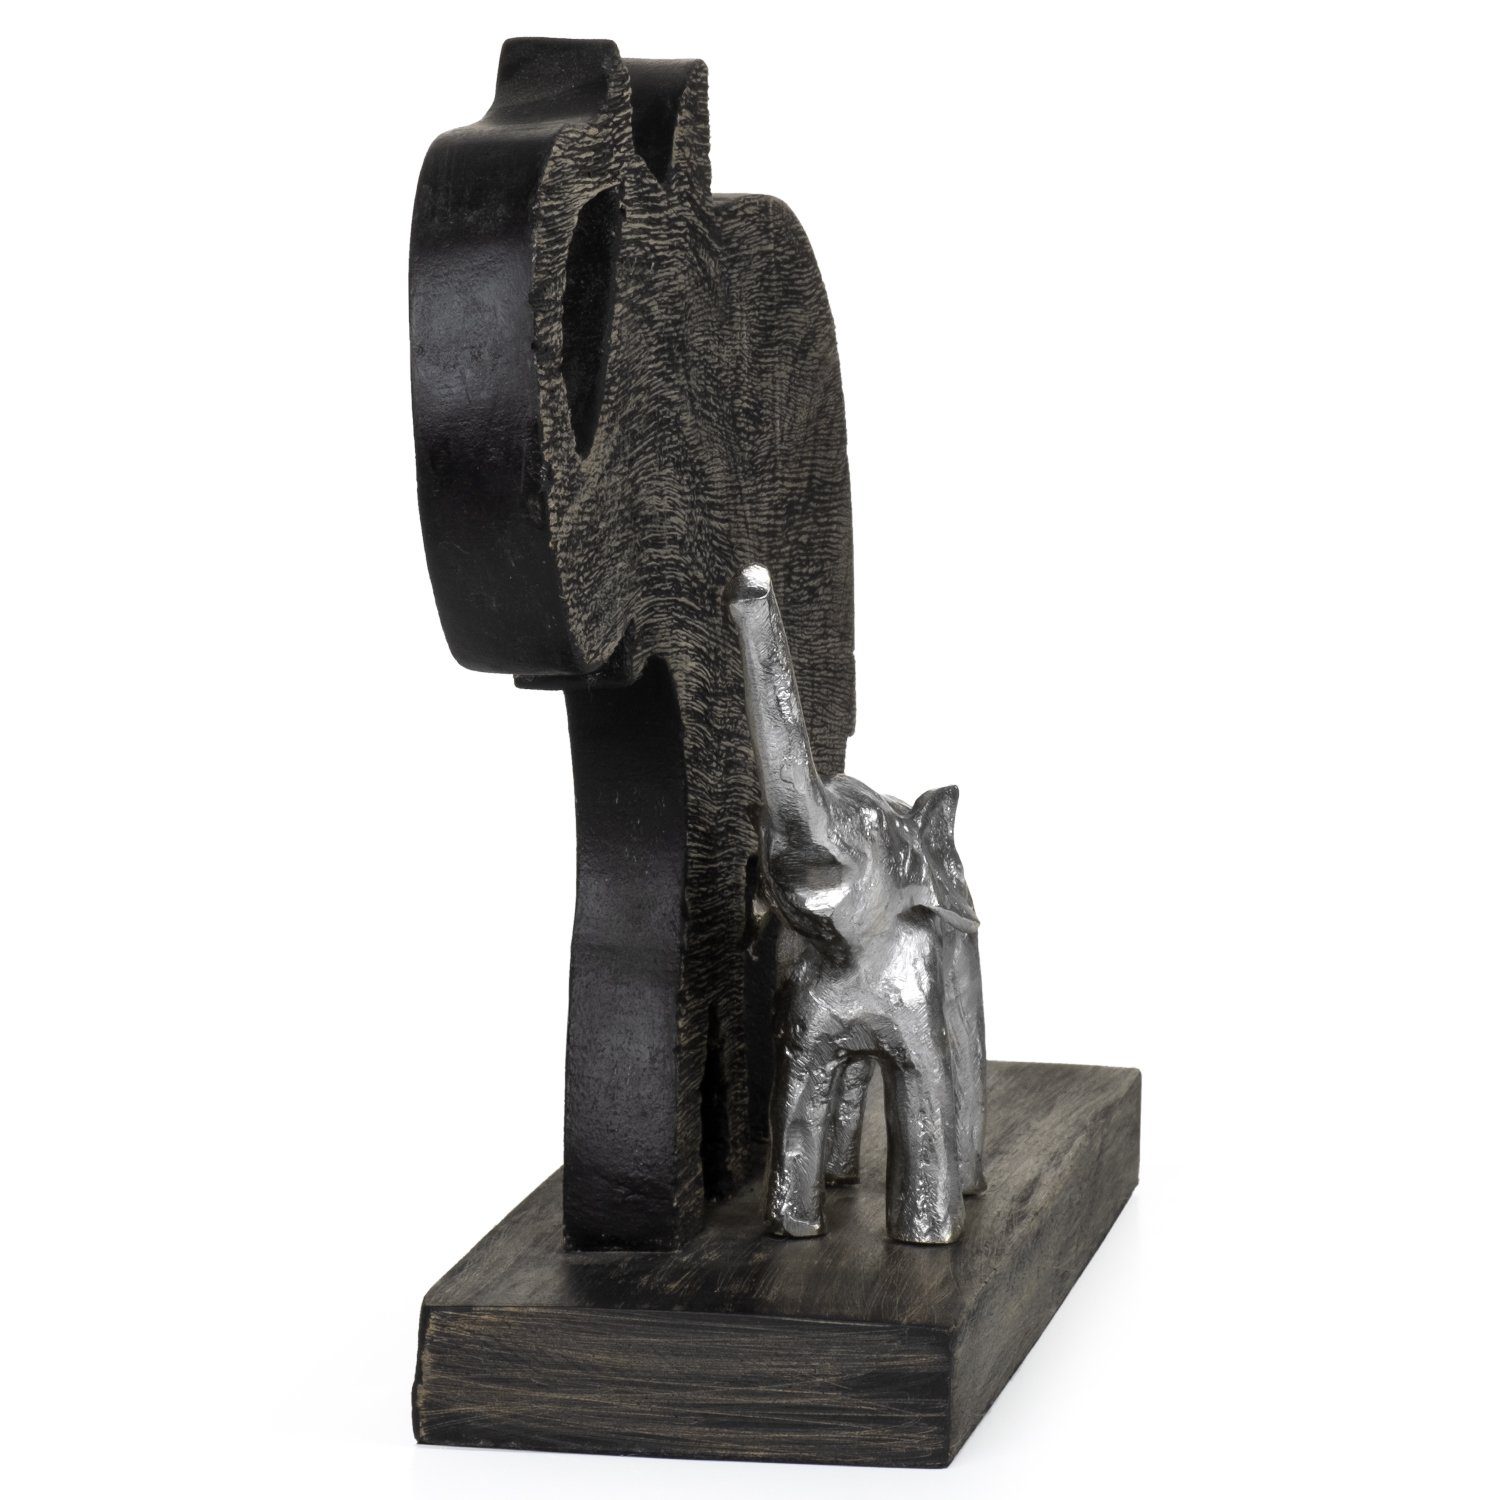 Moritz Skulptur Skulptur Dekoobjekt Fensterdeko, cm, Elefant mit 25x40x10 Holz, Kind Holzdeko Wanddeko, Tischdeko